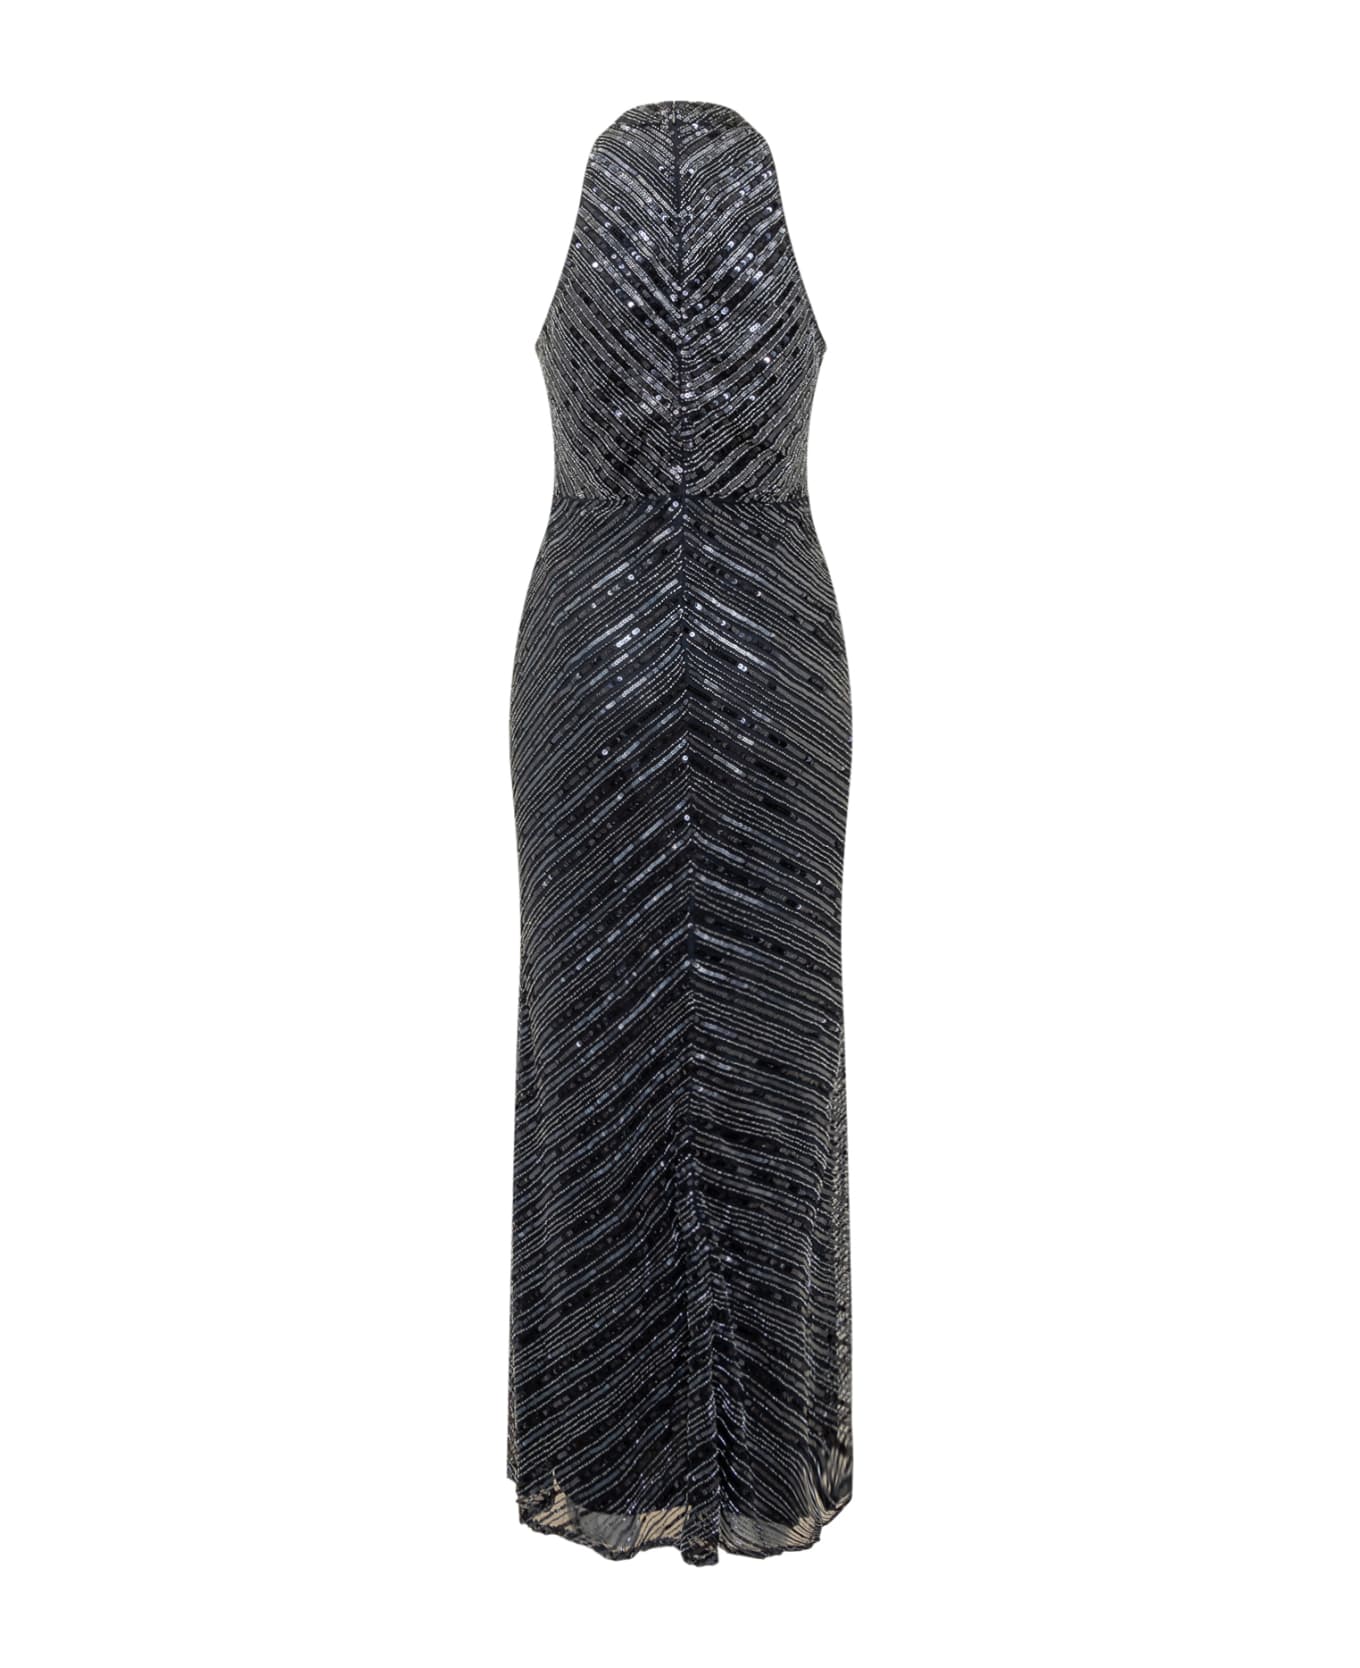 Ralph Lauren Emailene Gown Dress - Blue